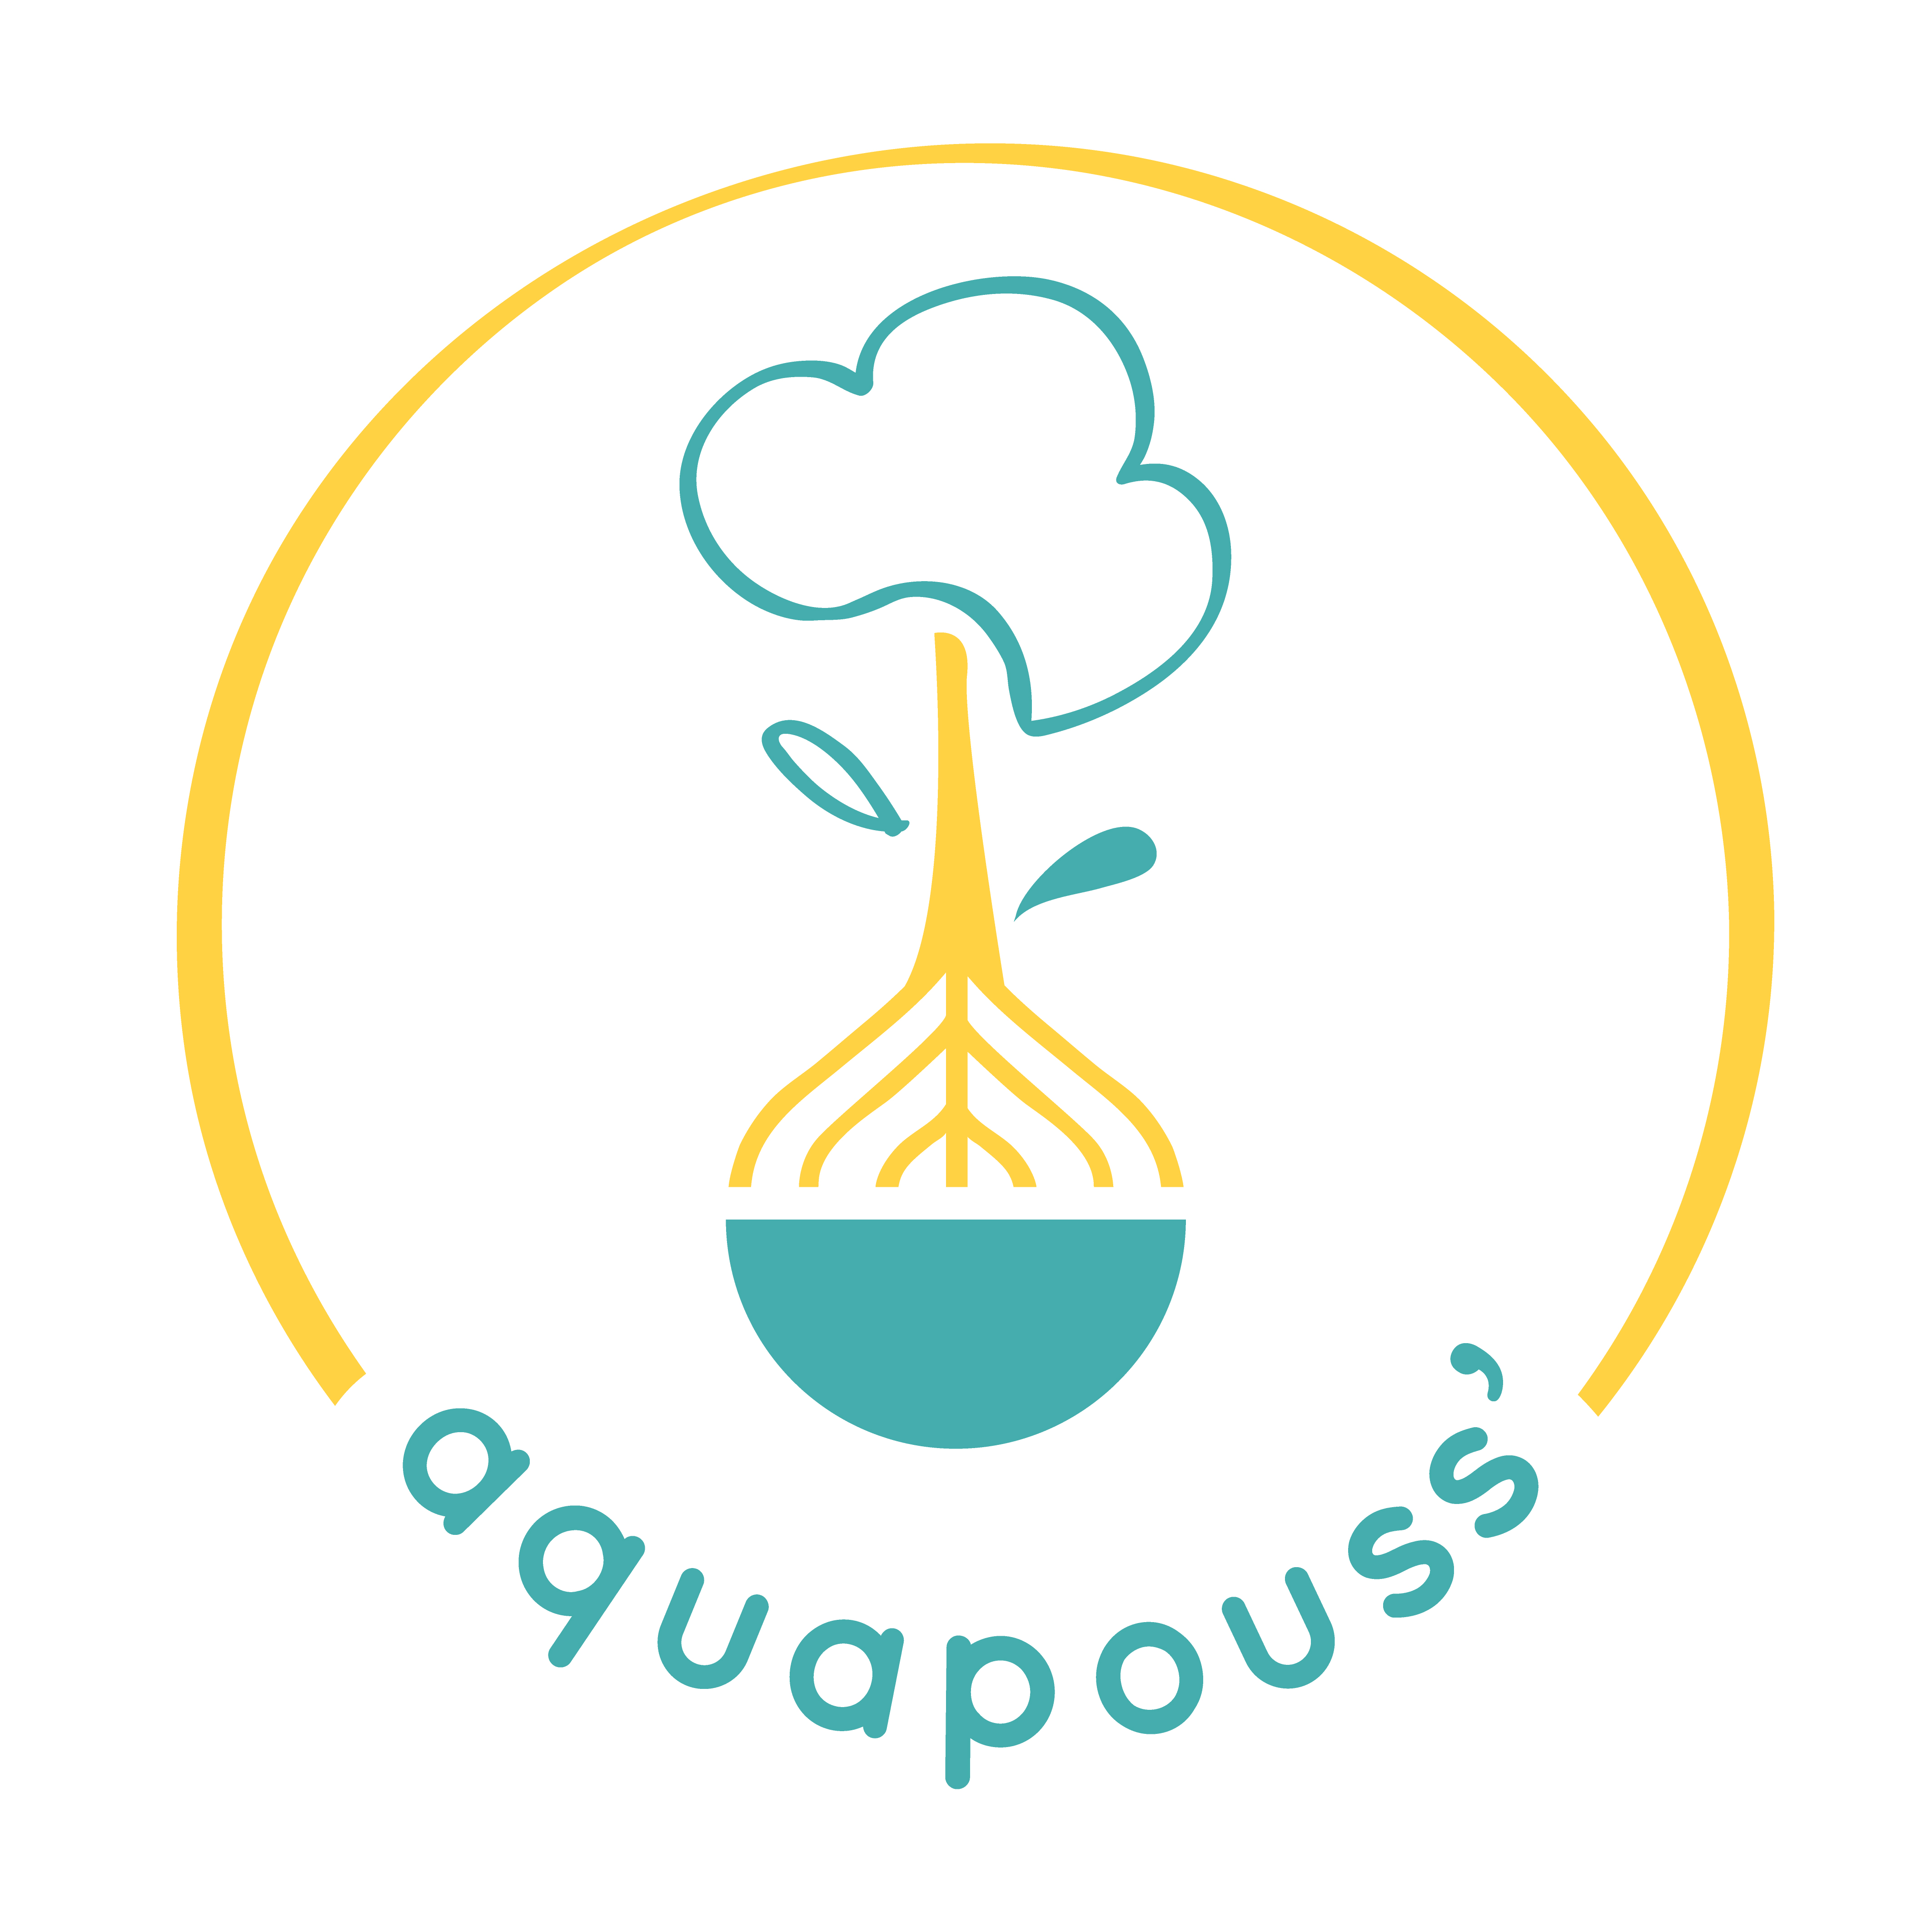 Aquapouss'